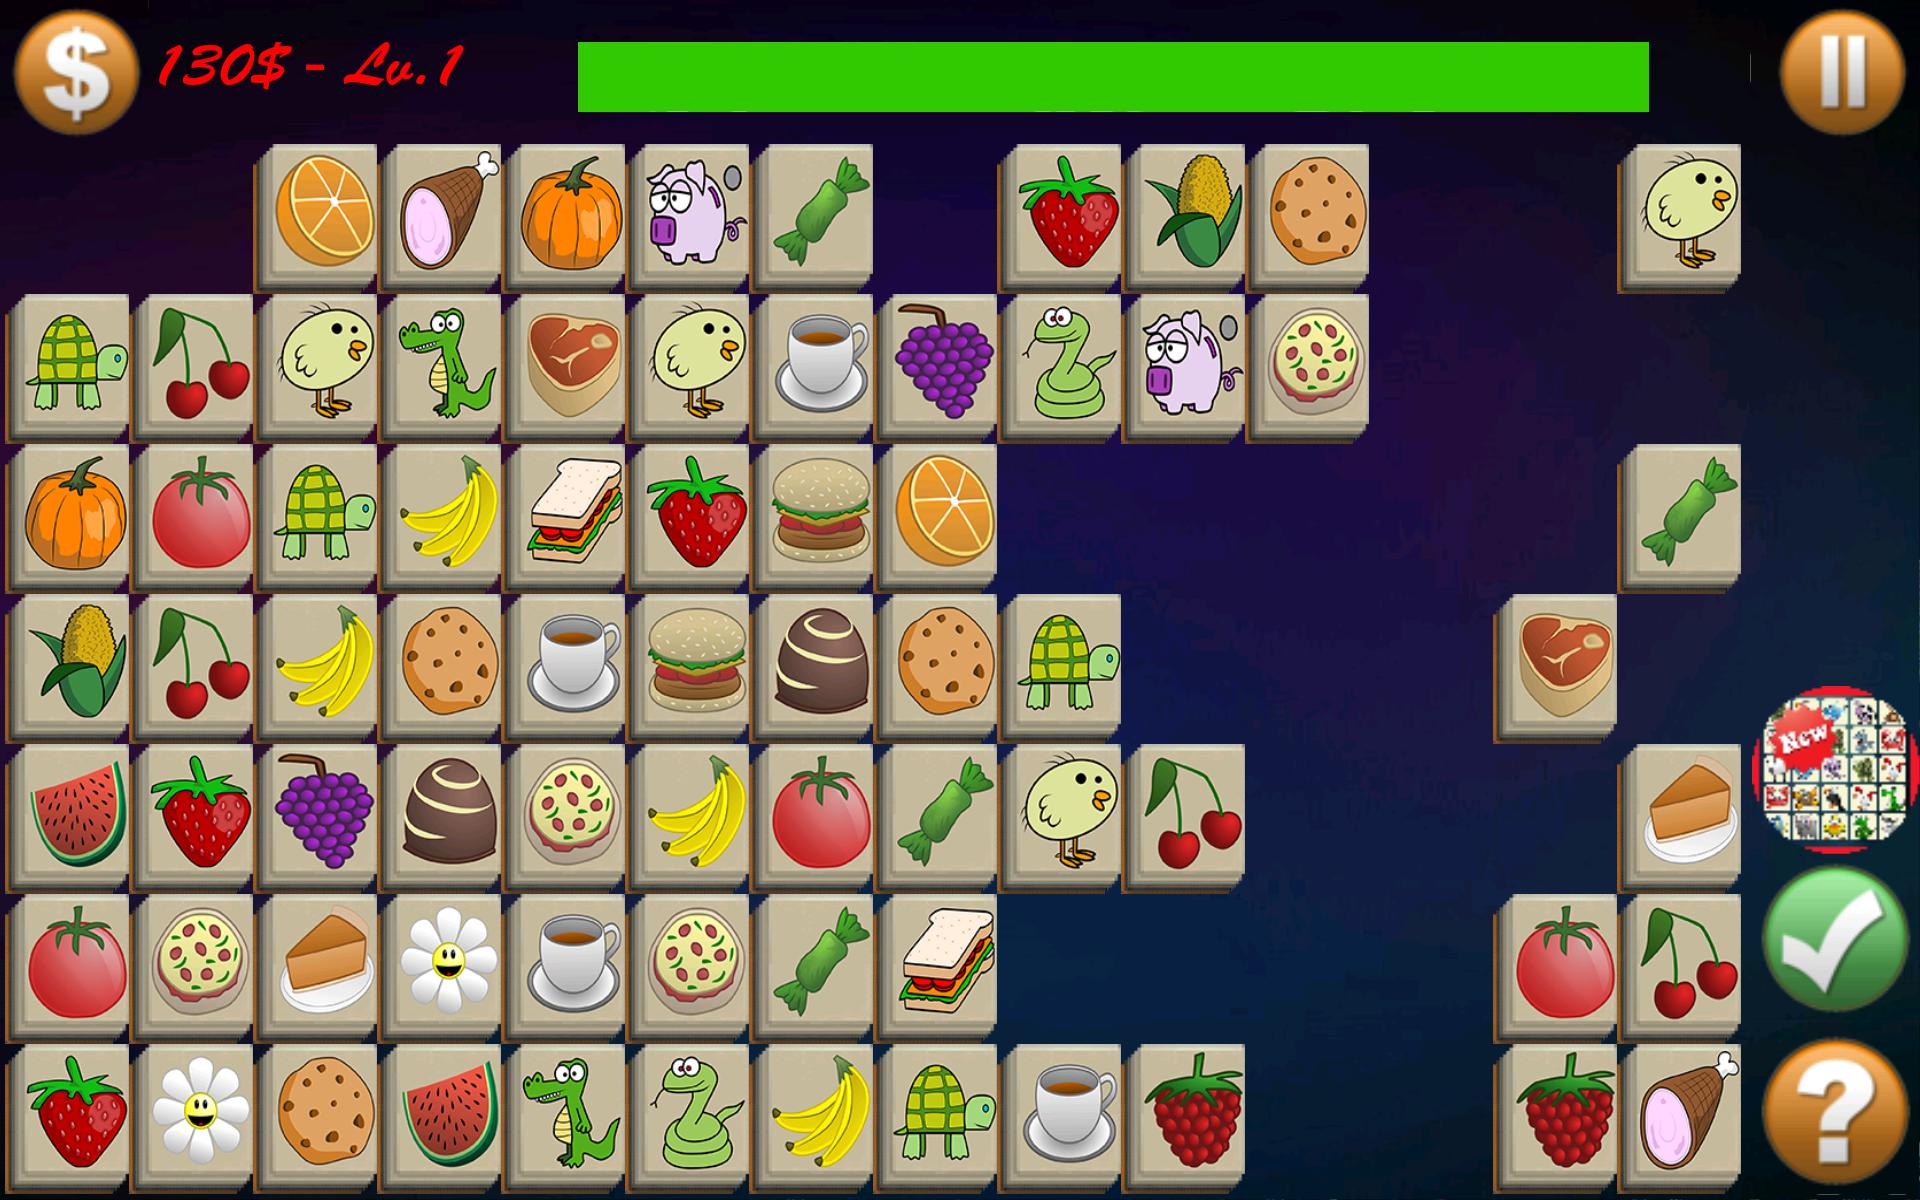 Фрукты коннект. Fruit connect игра. Onet овощи и фрукты. Fruits Memory game. Tile connect Classic Match игра.